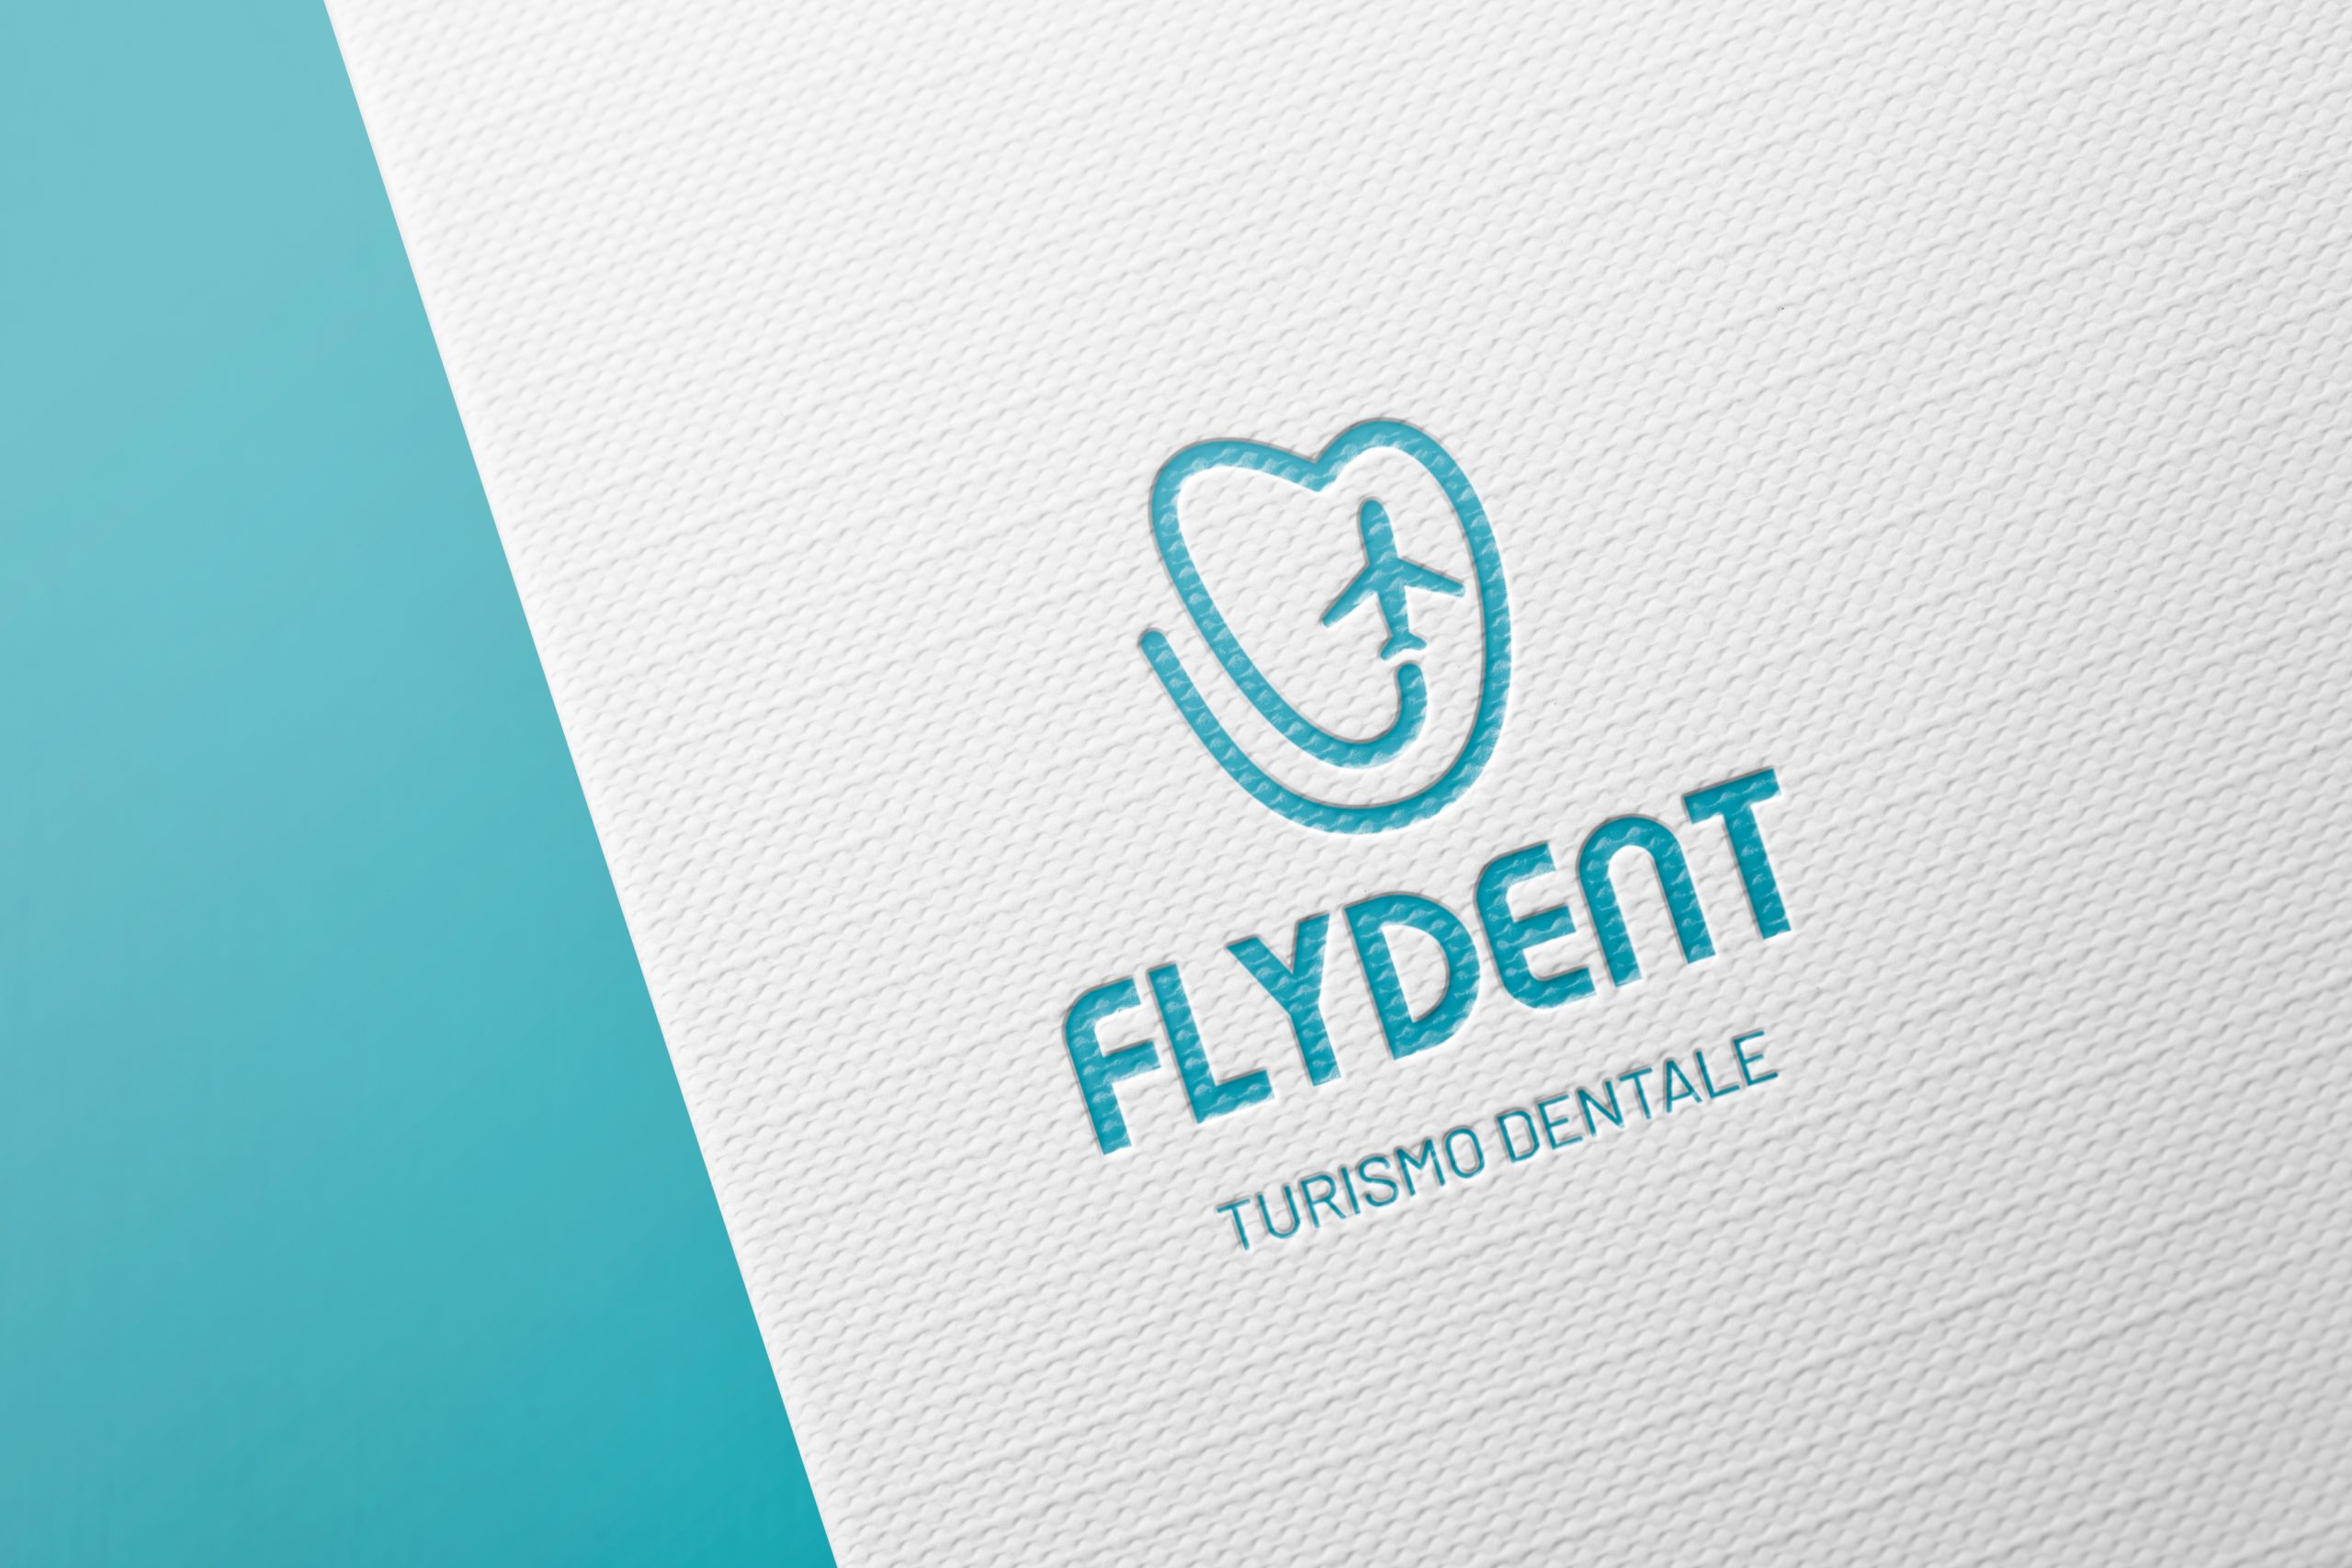 Flydent Dental Tourism